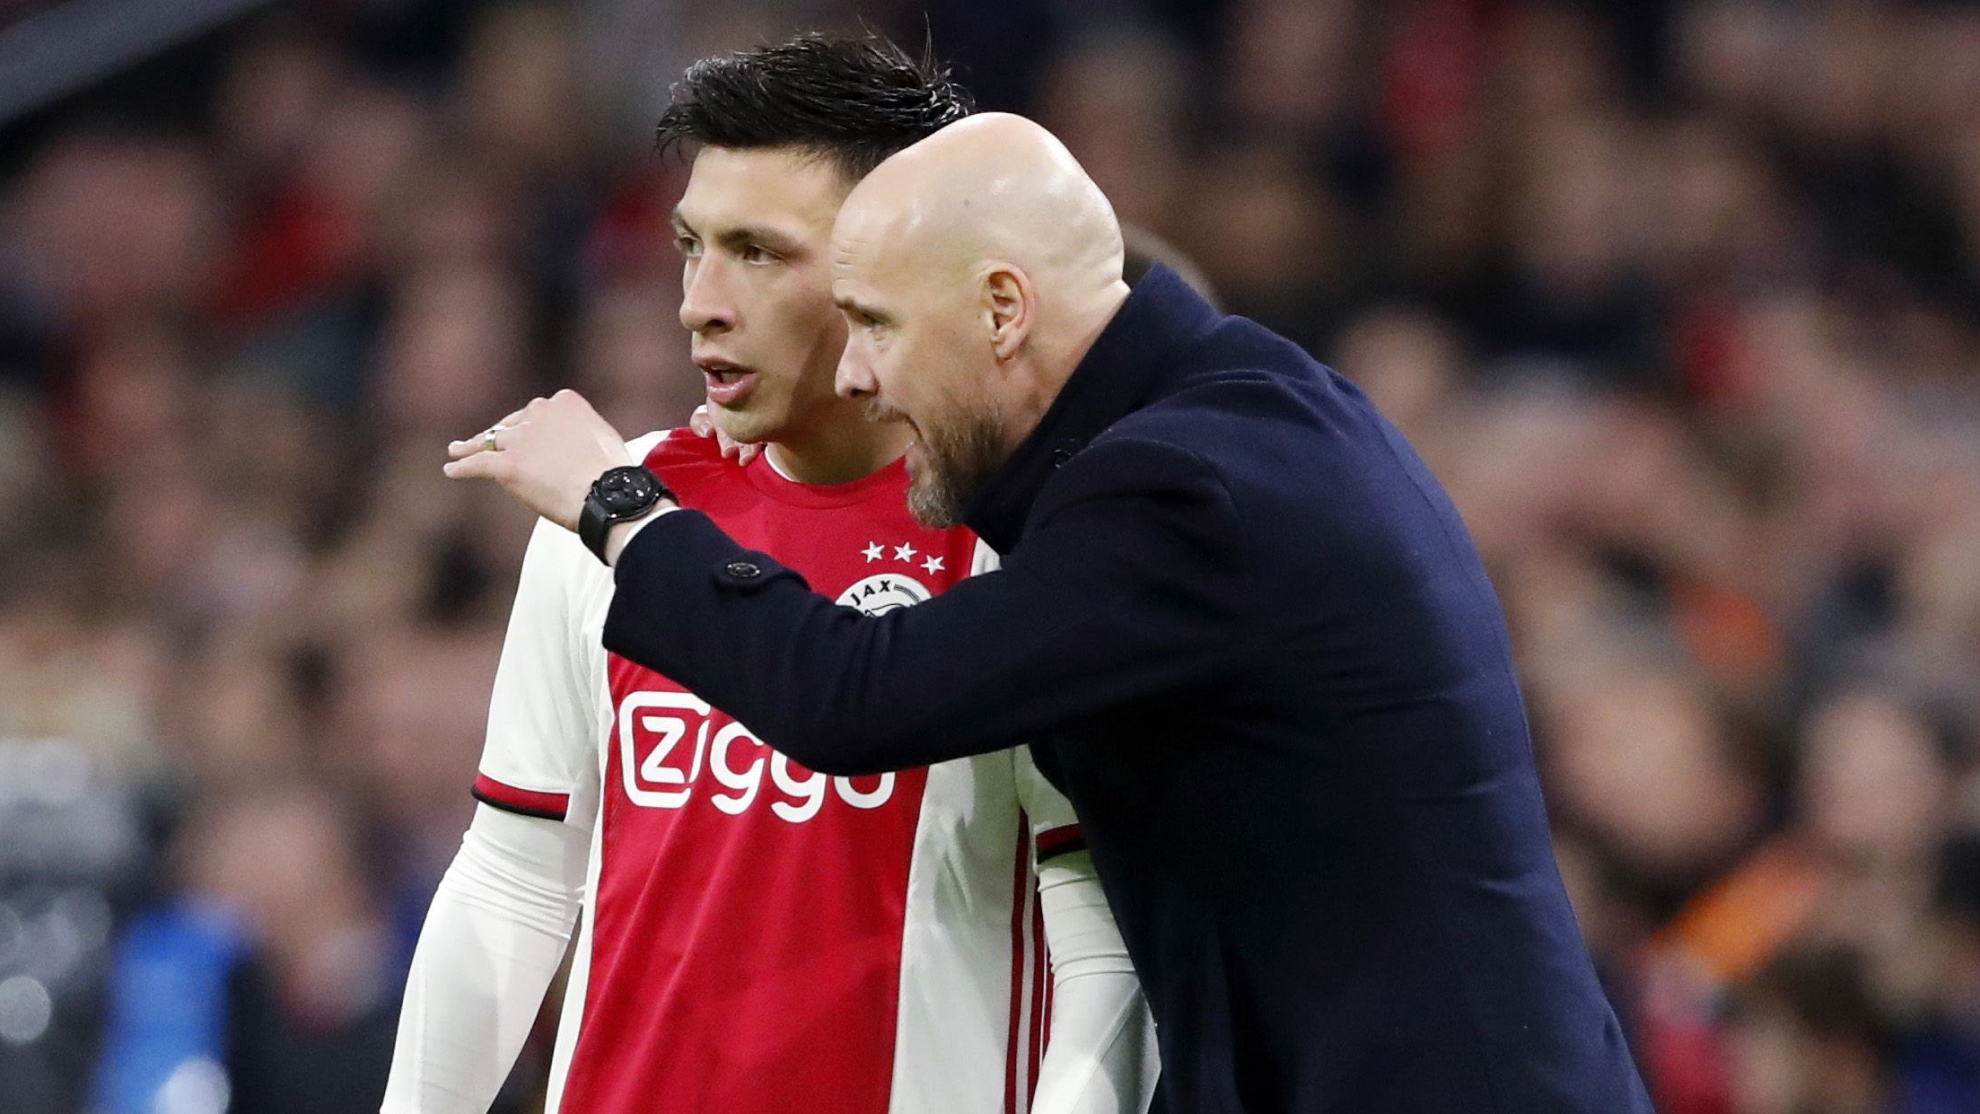 Lisandro Martínez (24) recibiendo instrucciones de Erik ten Hag (52) durante un partido del Ajax.